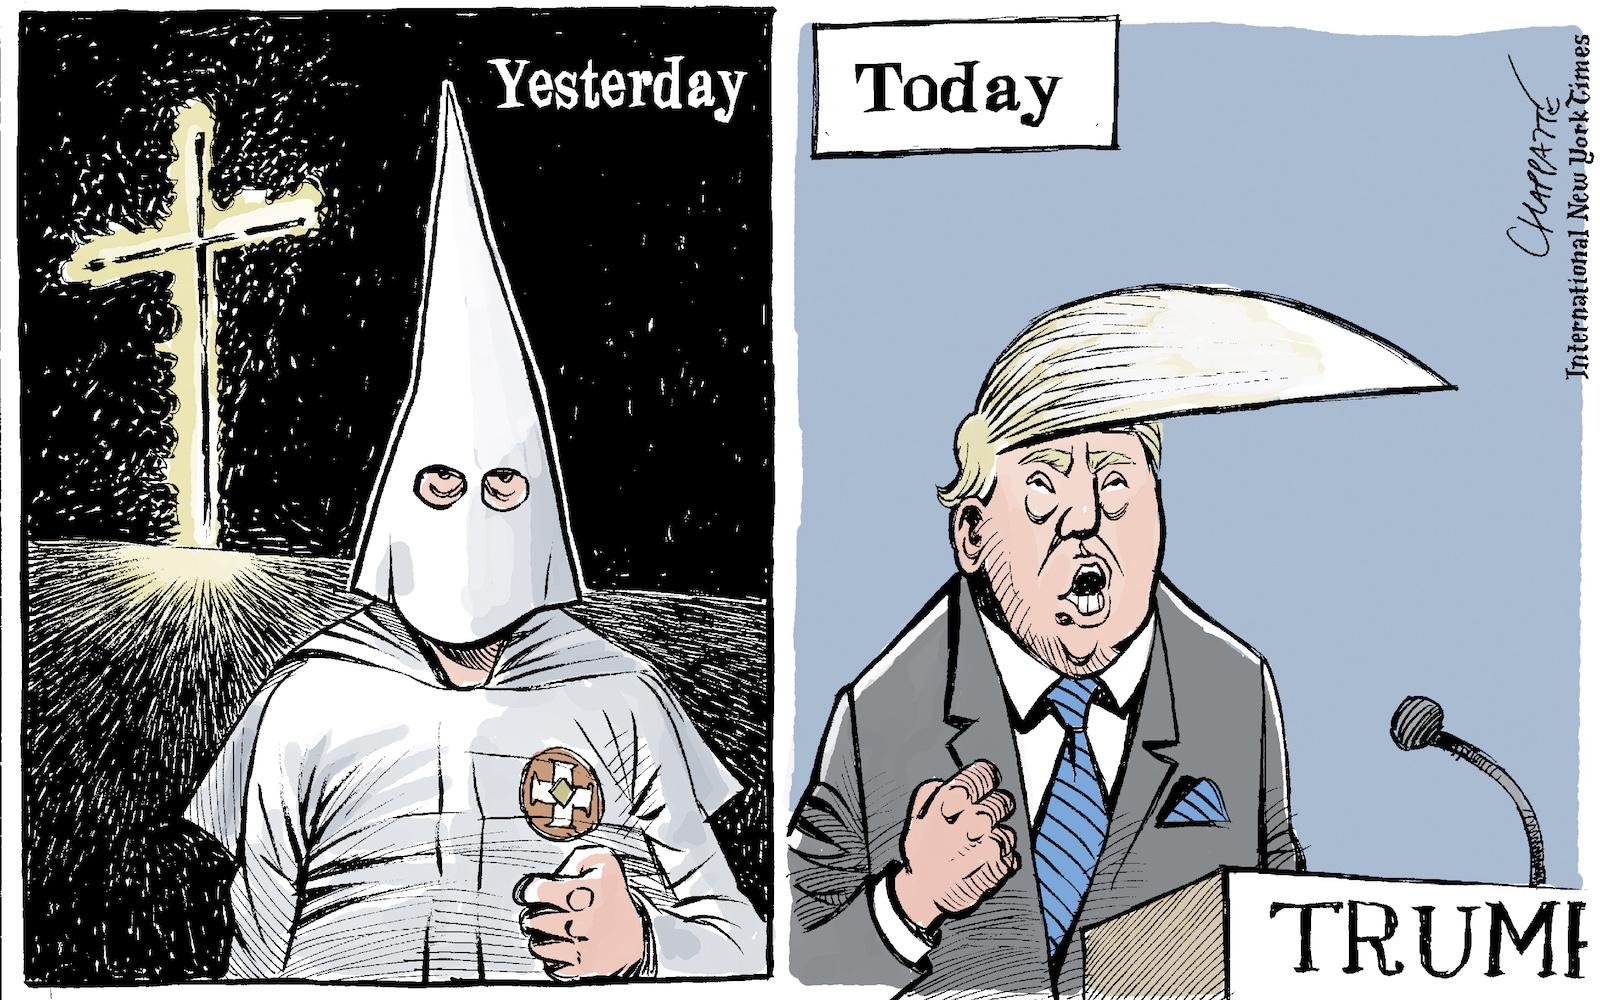 Trump and the Ku Klux Klan